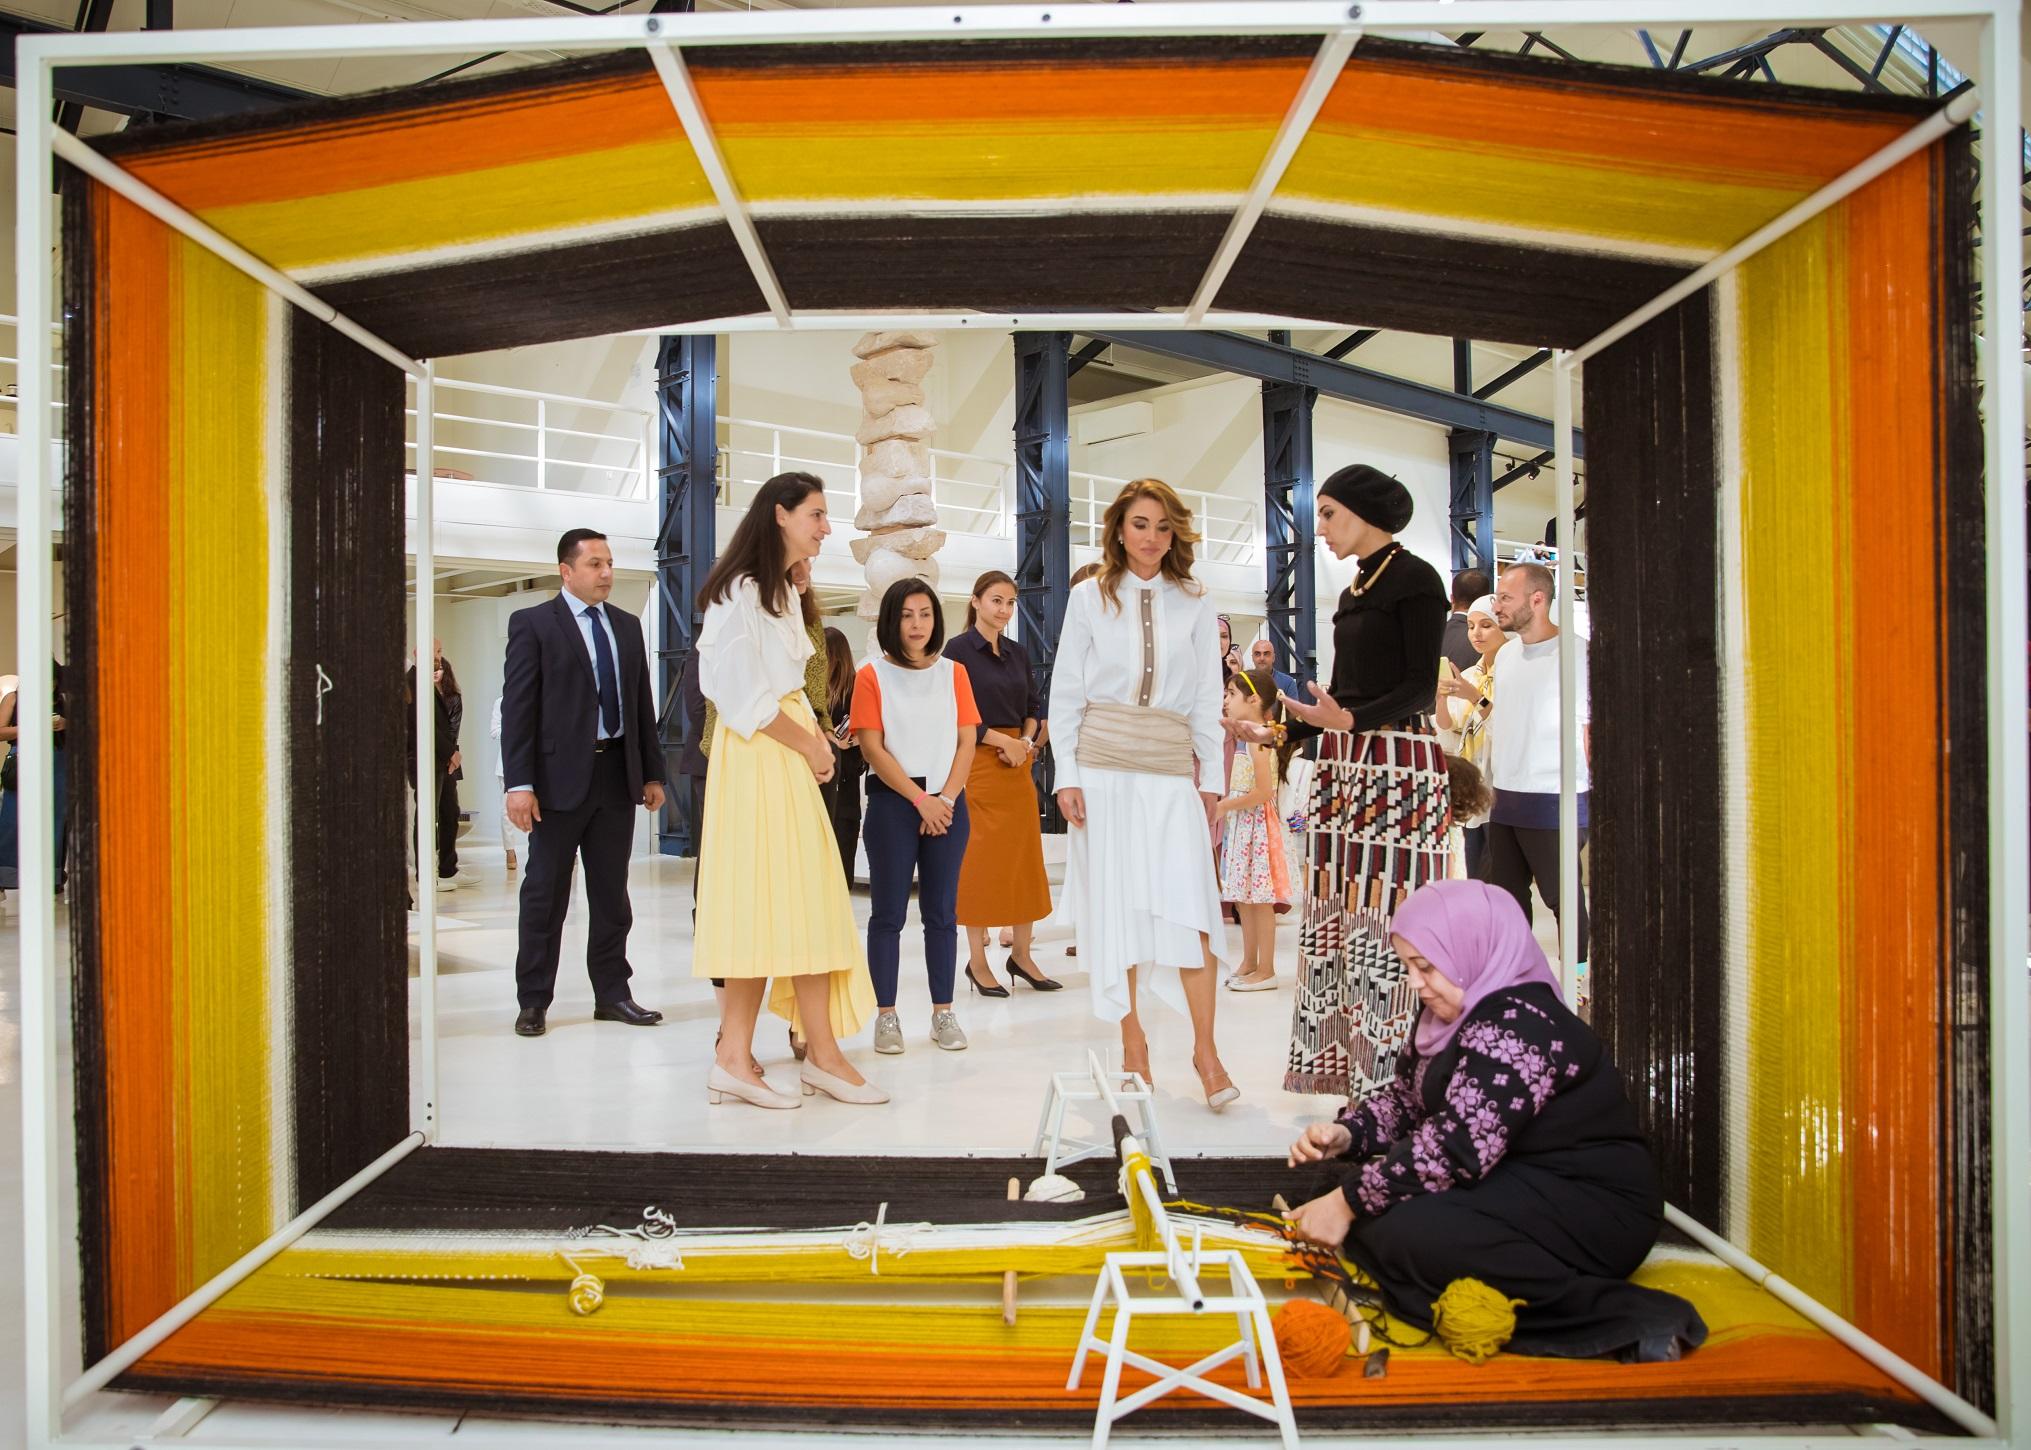  الملكة رانيا خلال حضورها أسبوع عمّان للتصميم. (بترا)